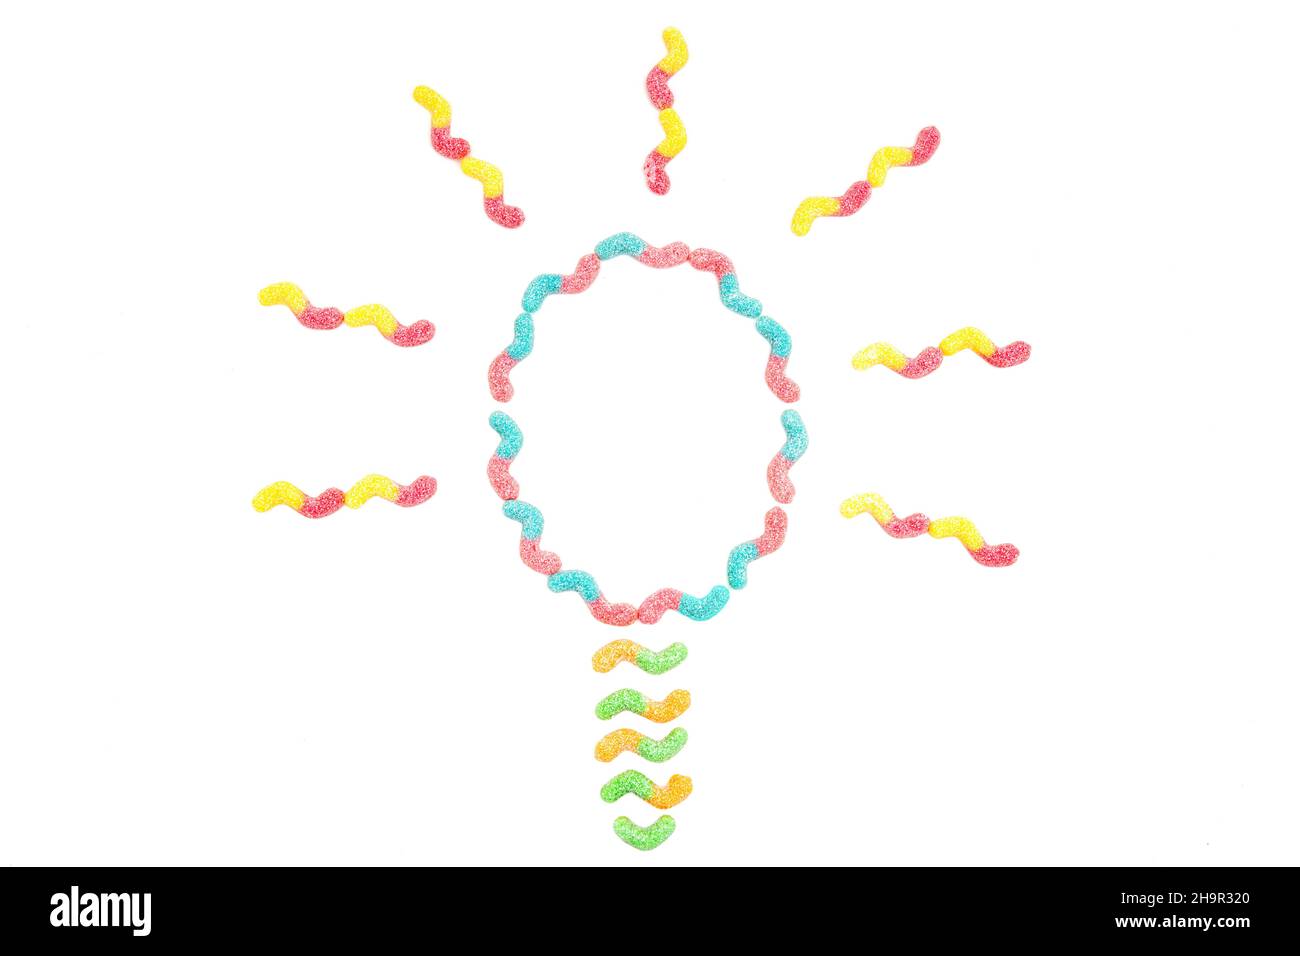 Glühbirne Symbol aus bunten Zucker überzogen Gummiwürmer auf weiß isoliert. Zucker hilft beim Denken. Stockfoto